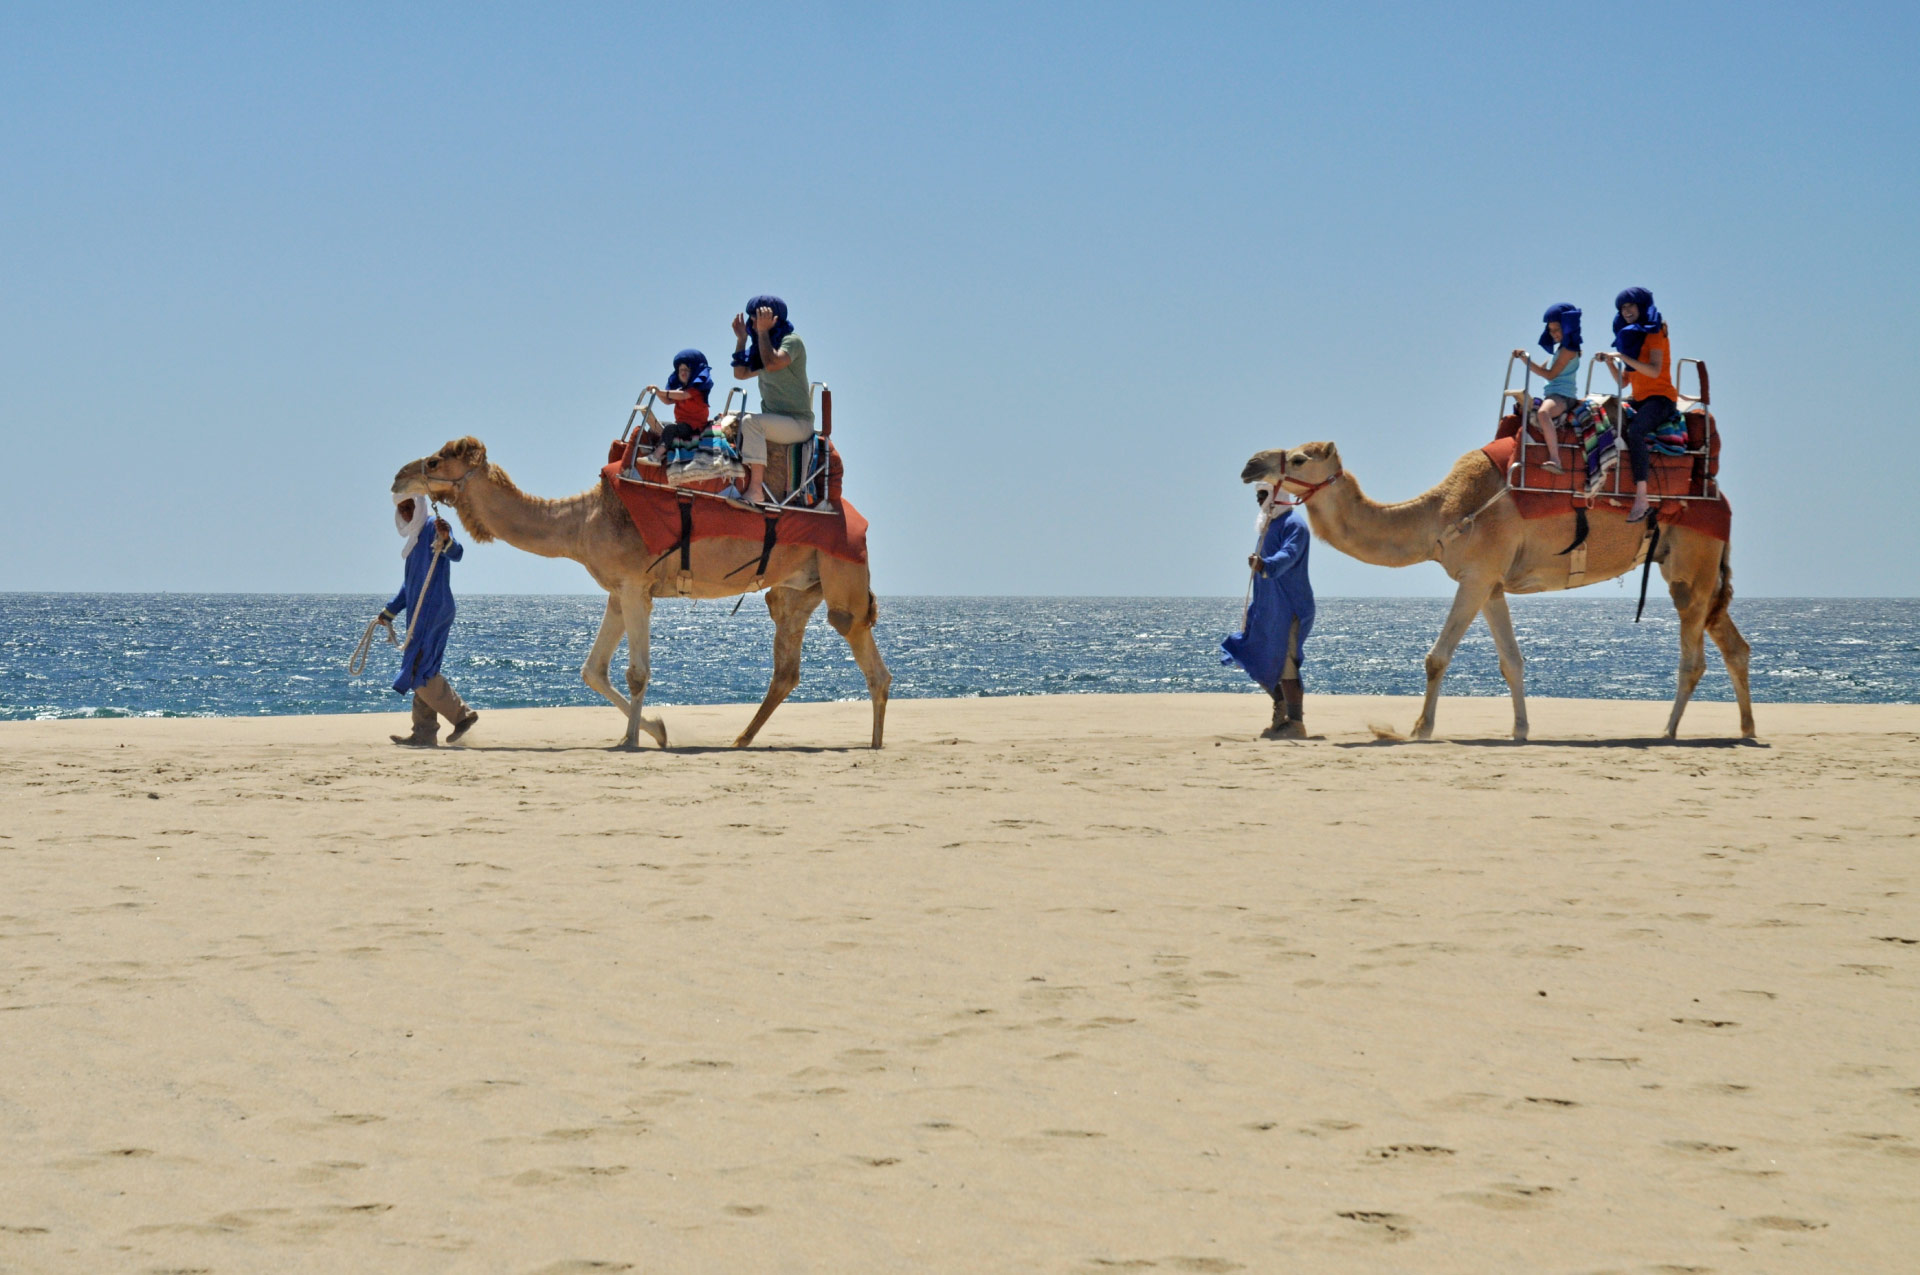 Camel ride Los Cabos Baja California Sur, Mexico